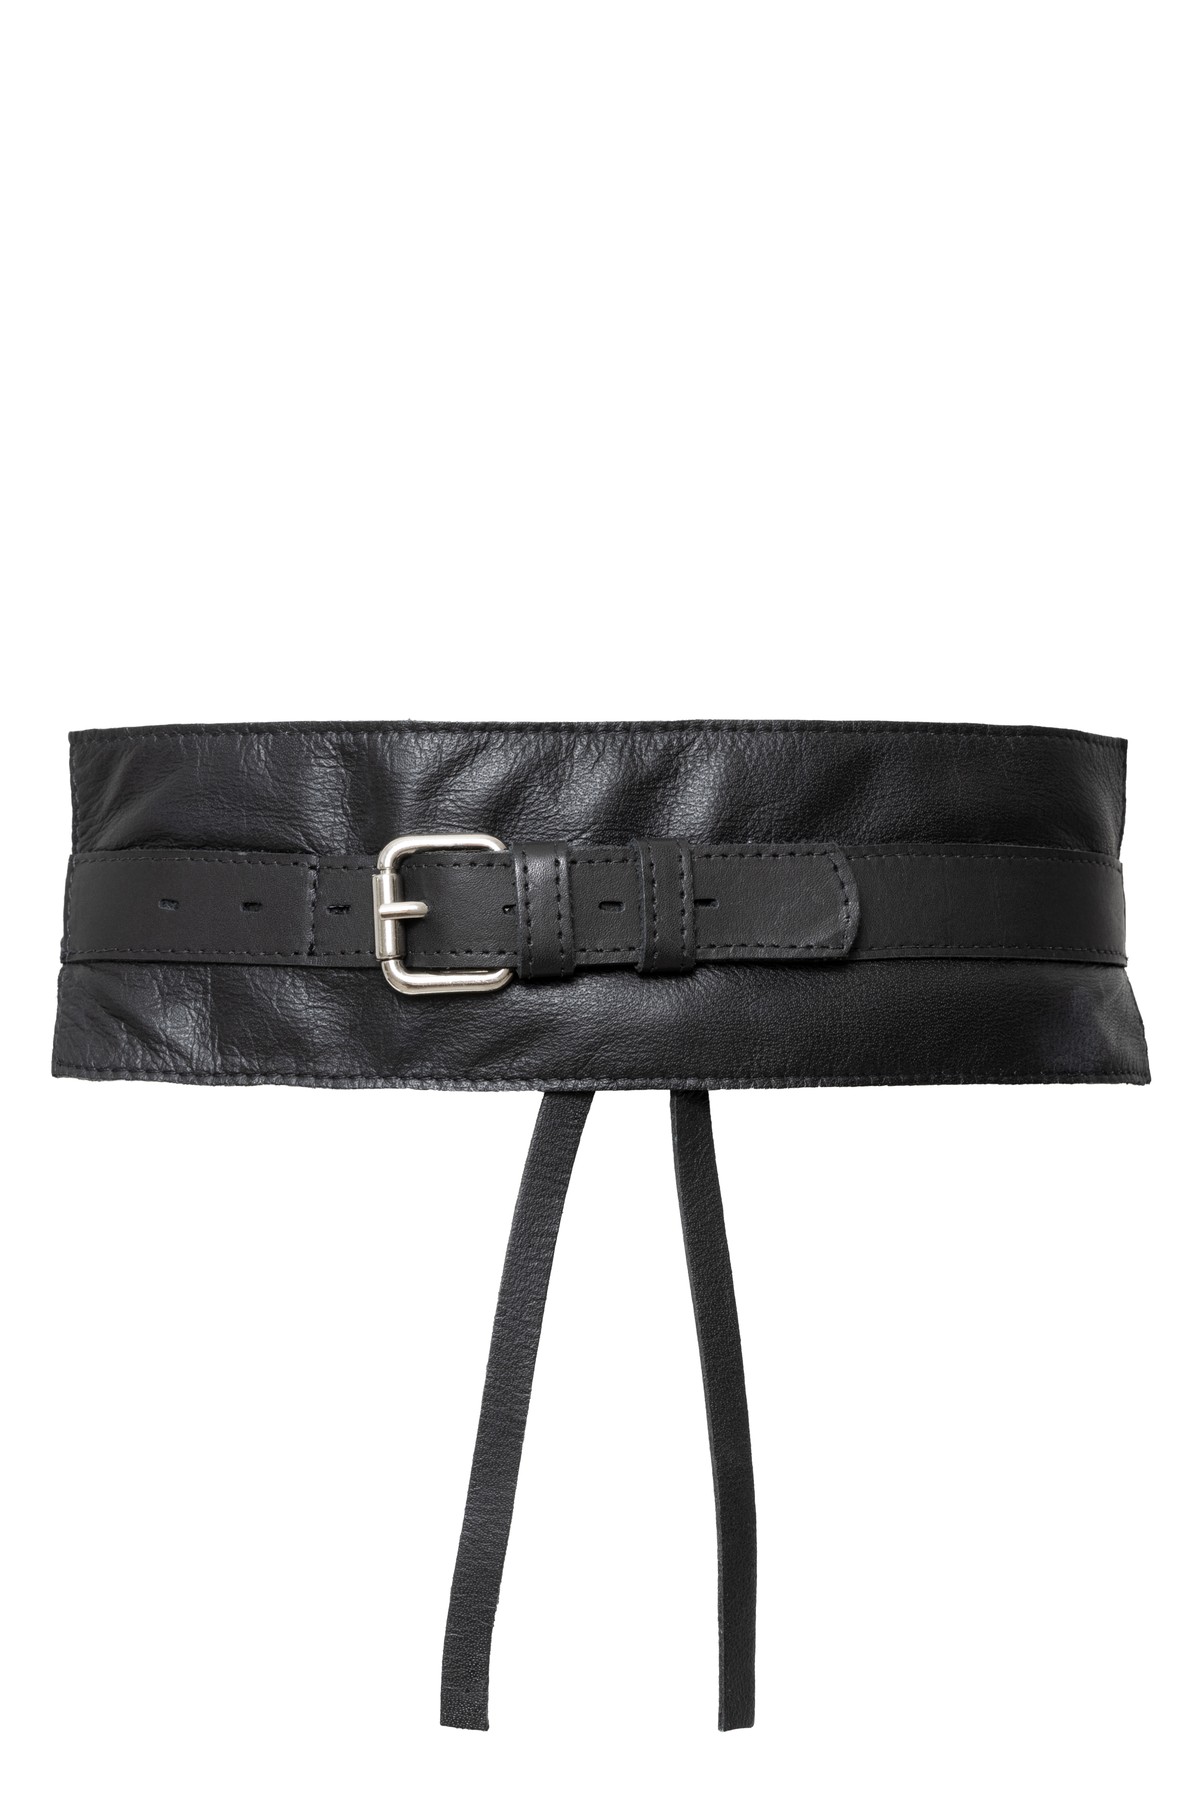 cinto com amarração e detalhe em couro | wide sash leather belt